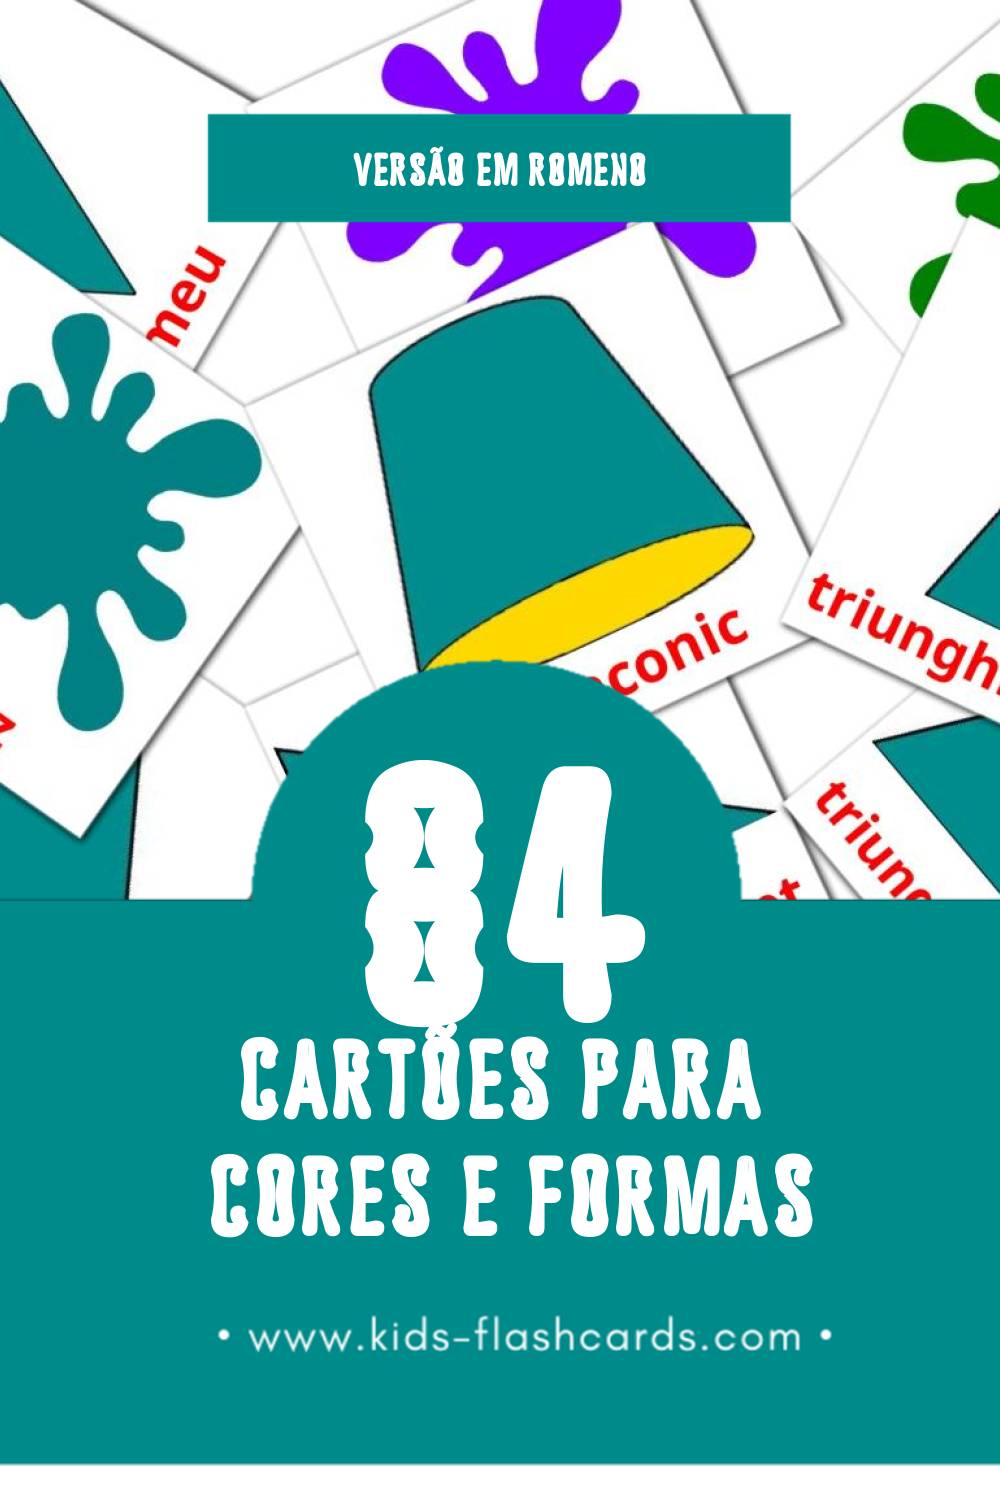 Flashcards de culori și forme Visuais para Toddlers (84 cartões em Romeno)